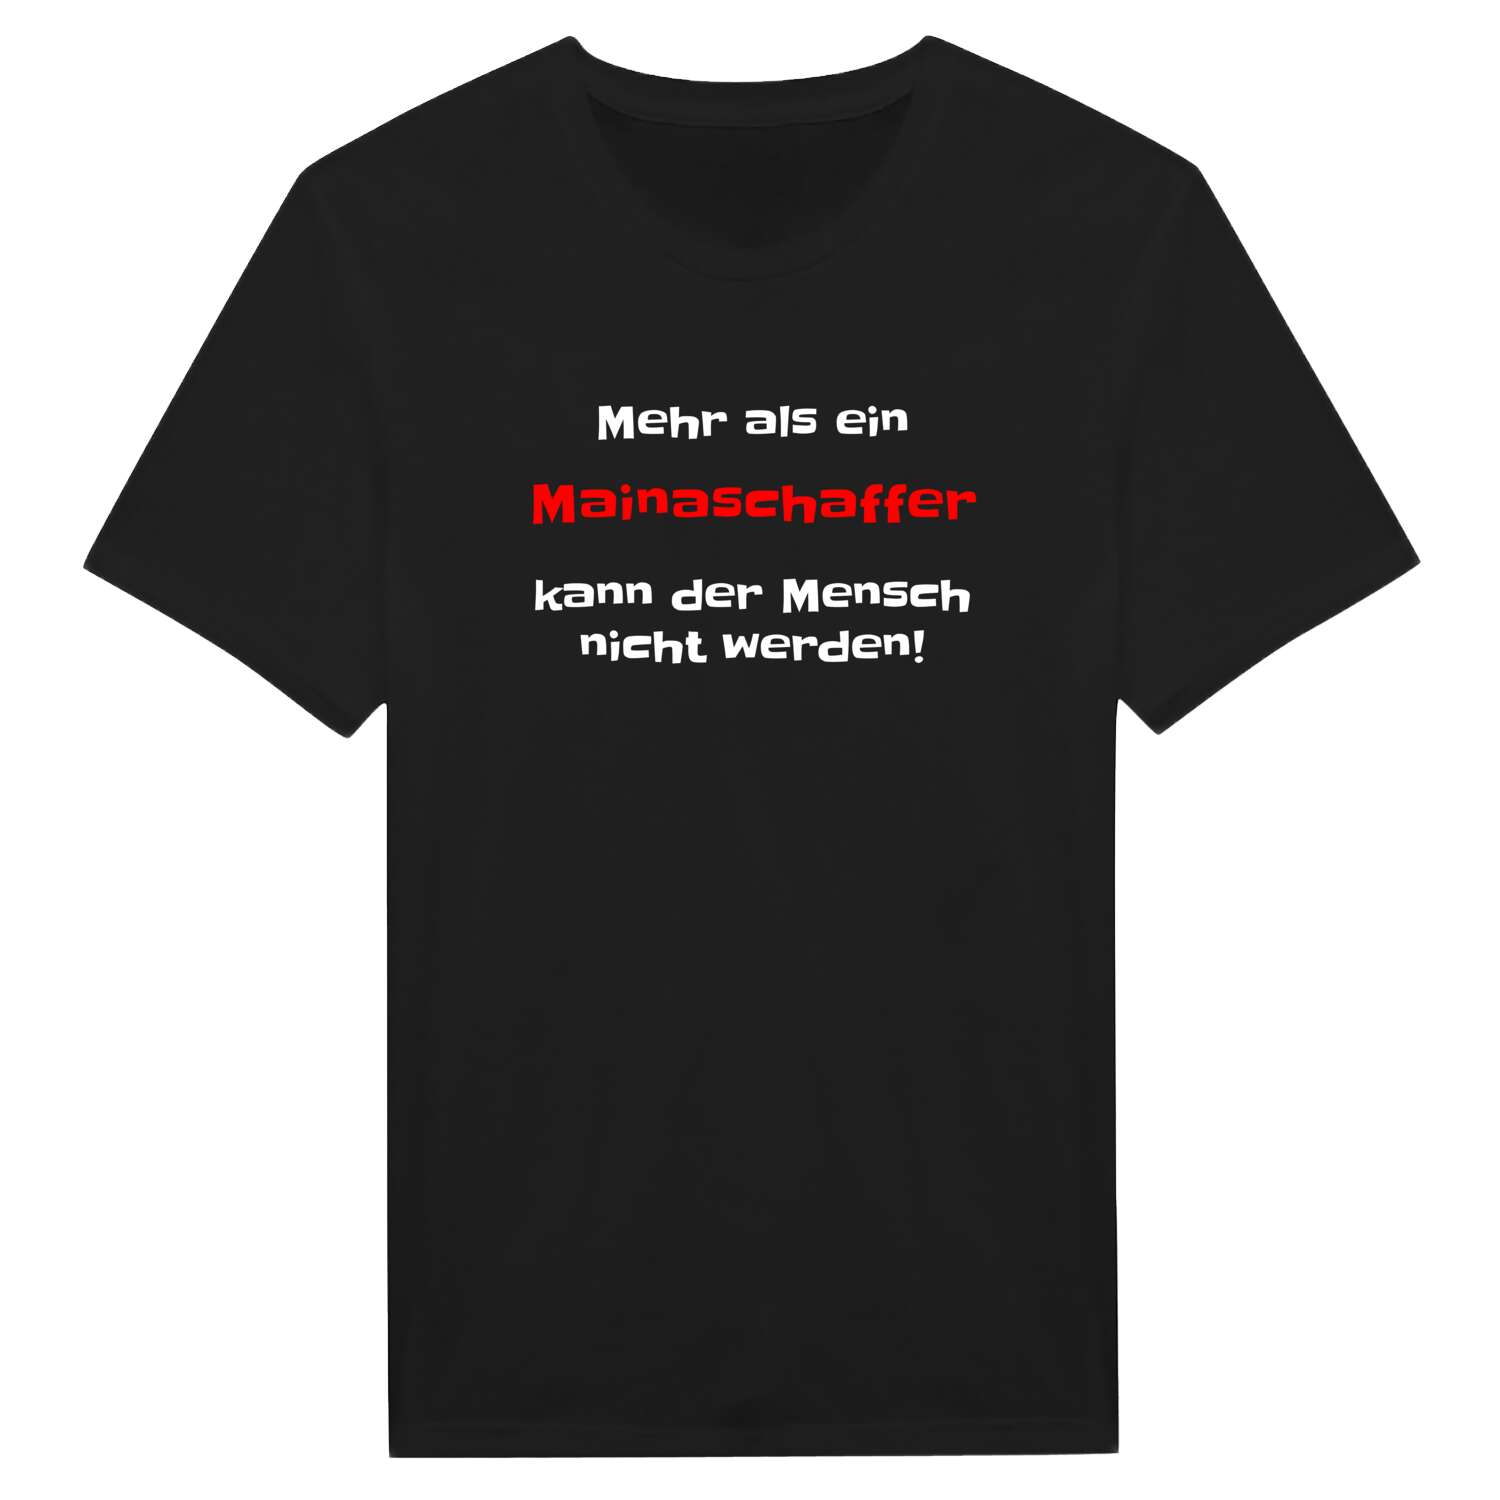 Mainaschaff T-Shirt »Mehr als ein«